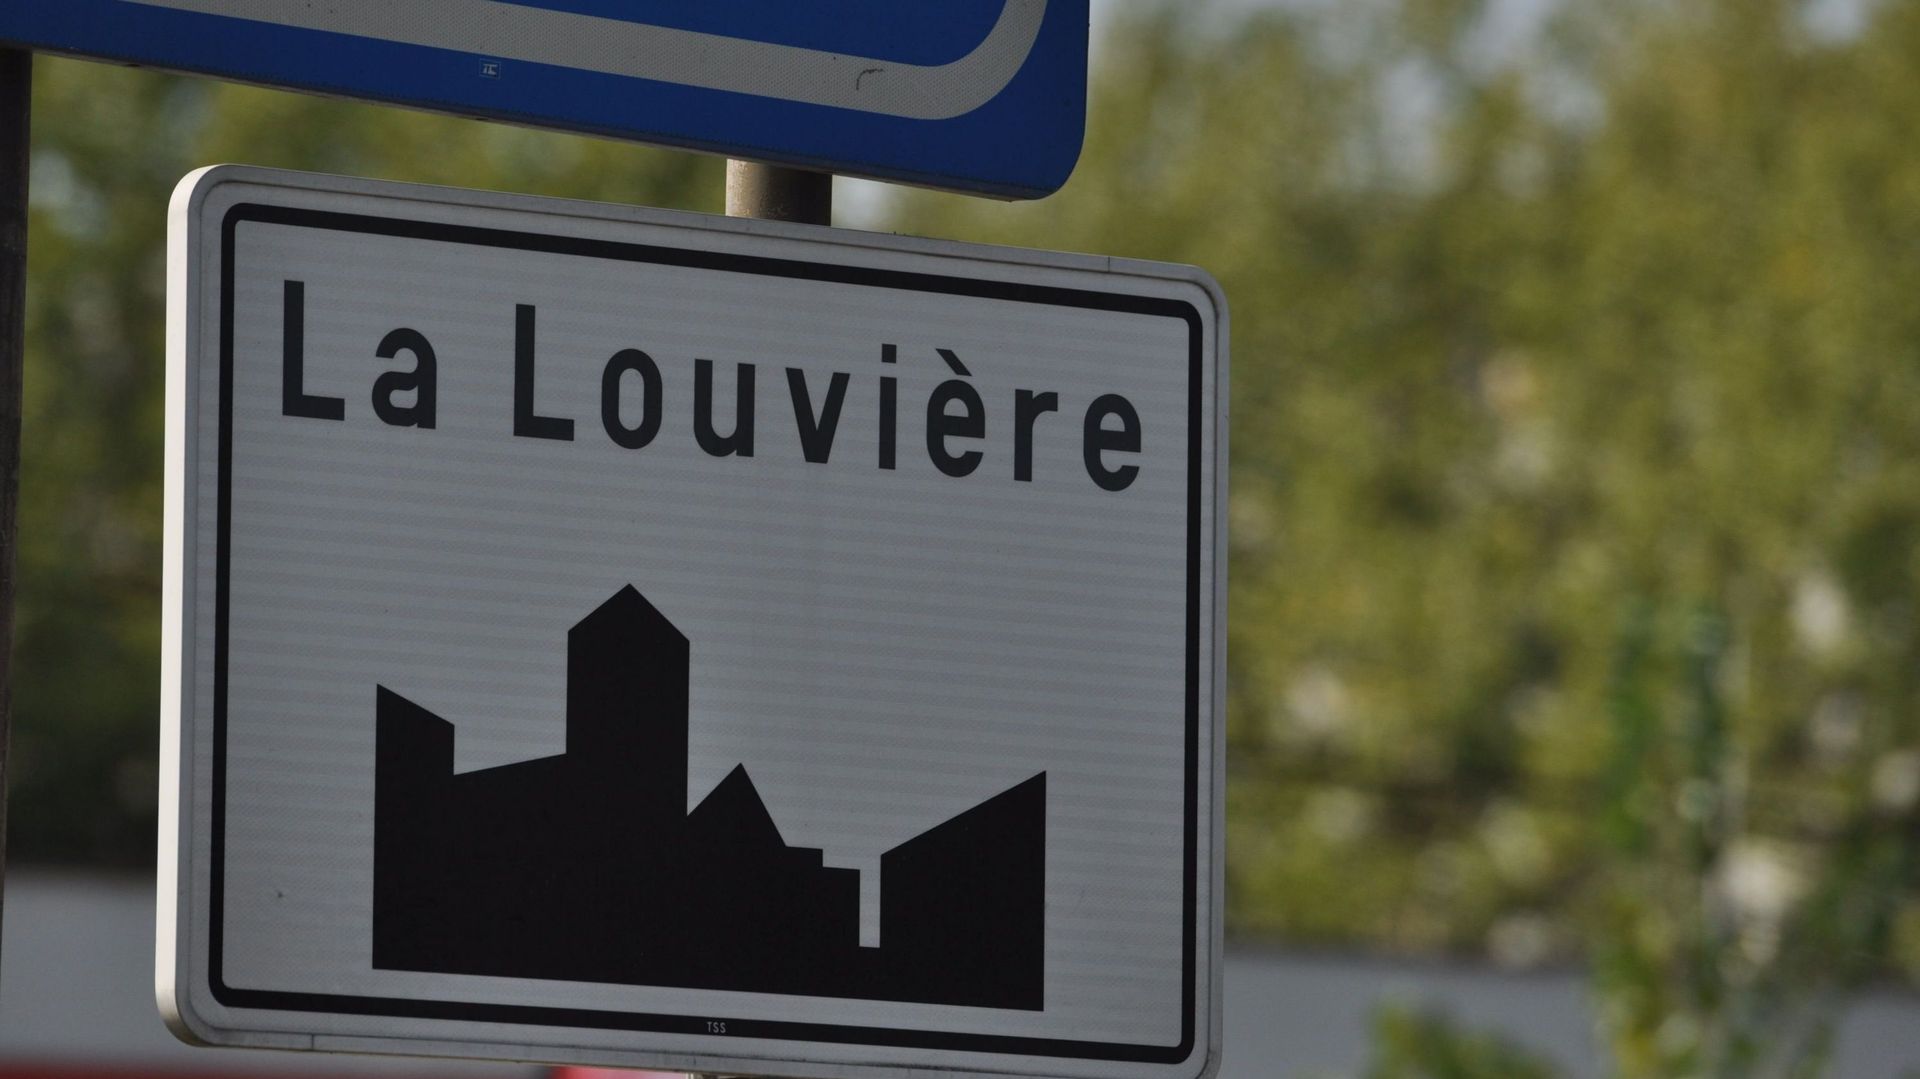 Une enseignante de La Louvière condamnée pour harcèlement à l'égard de ses collègues